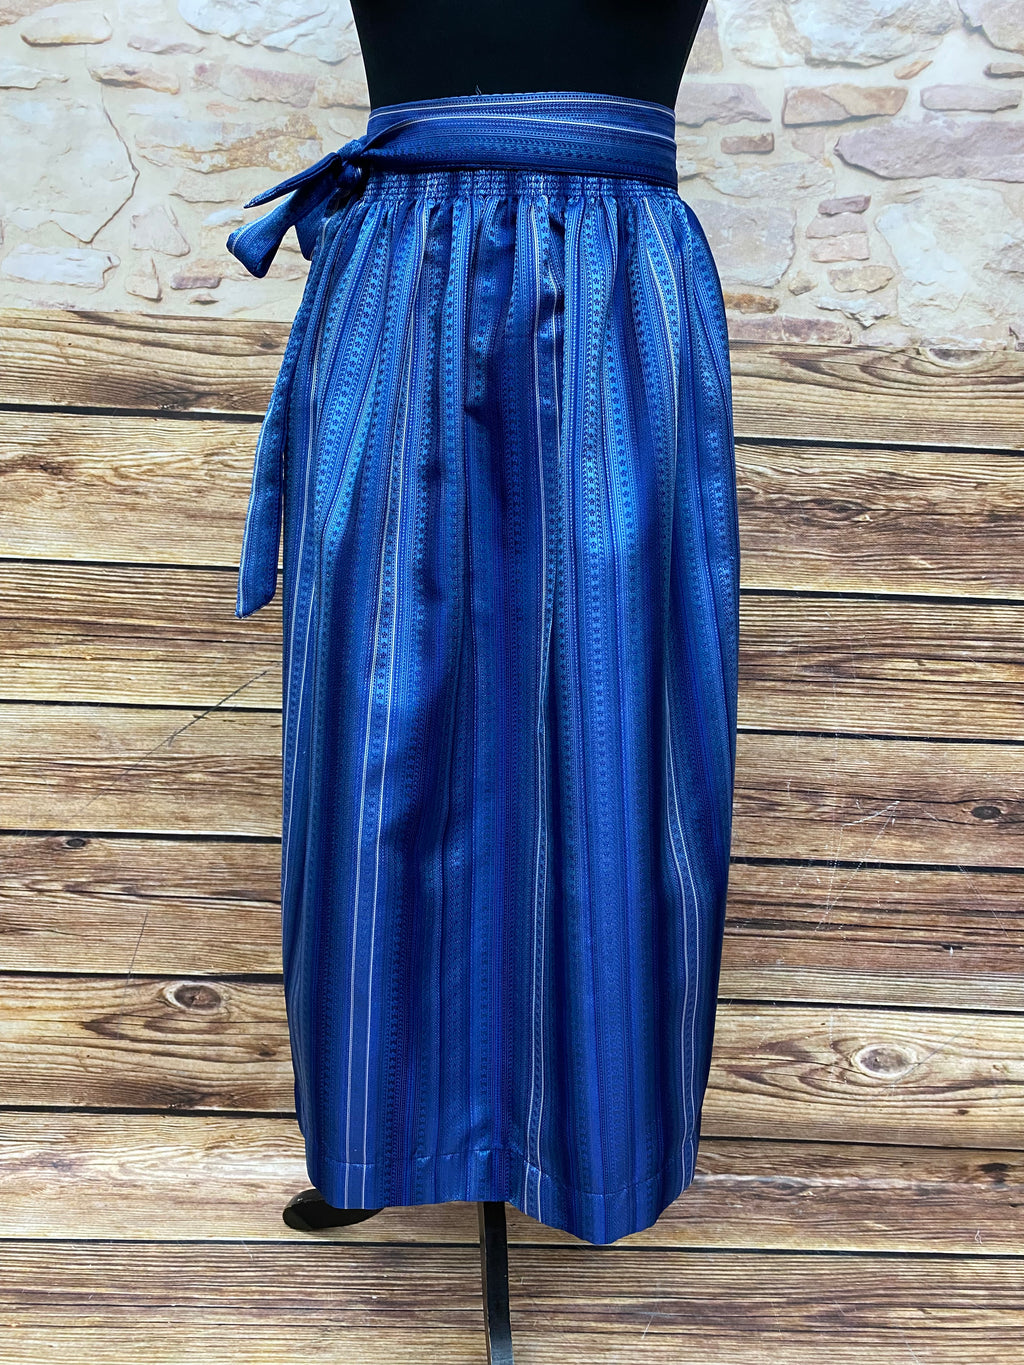 Lange Vintage Dirndlschürze für Trachten-Kleid in blau gemustert 85 cm